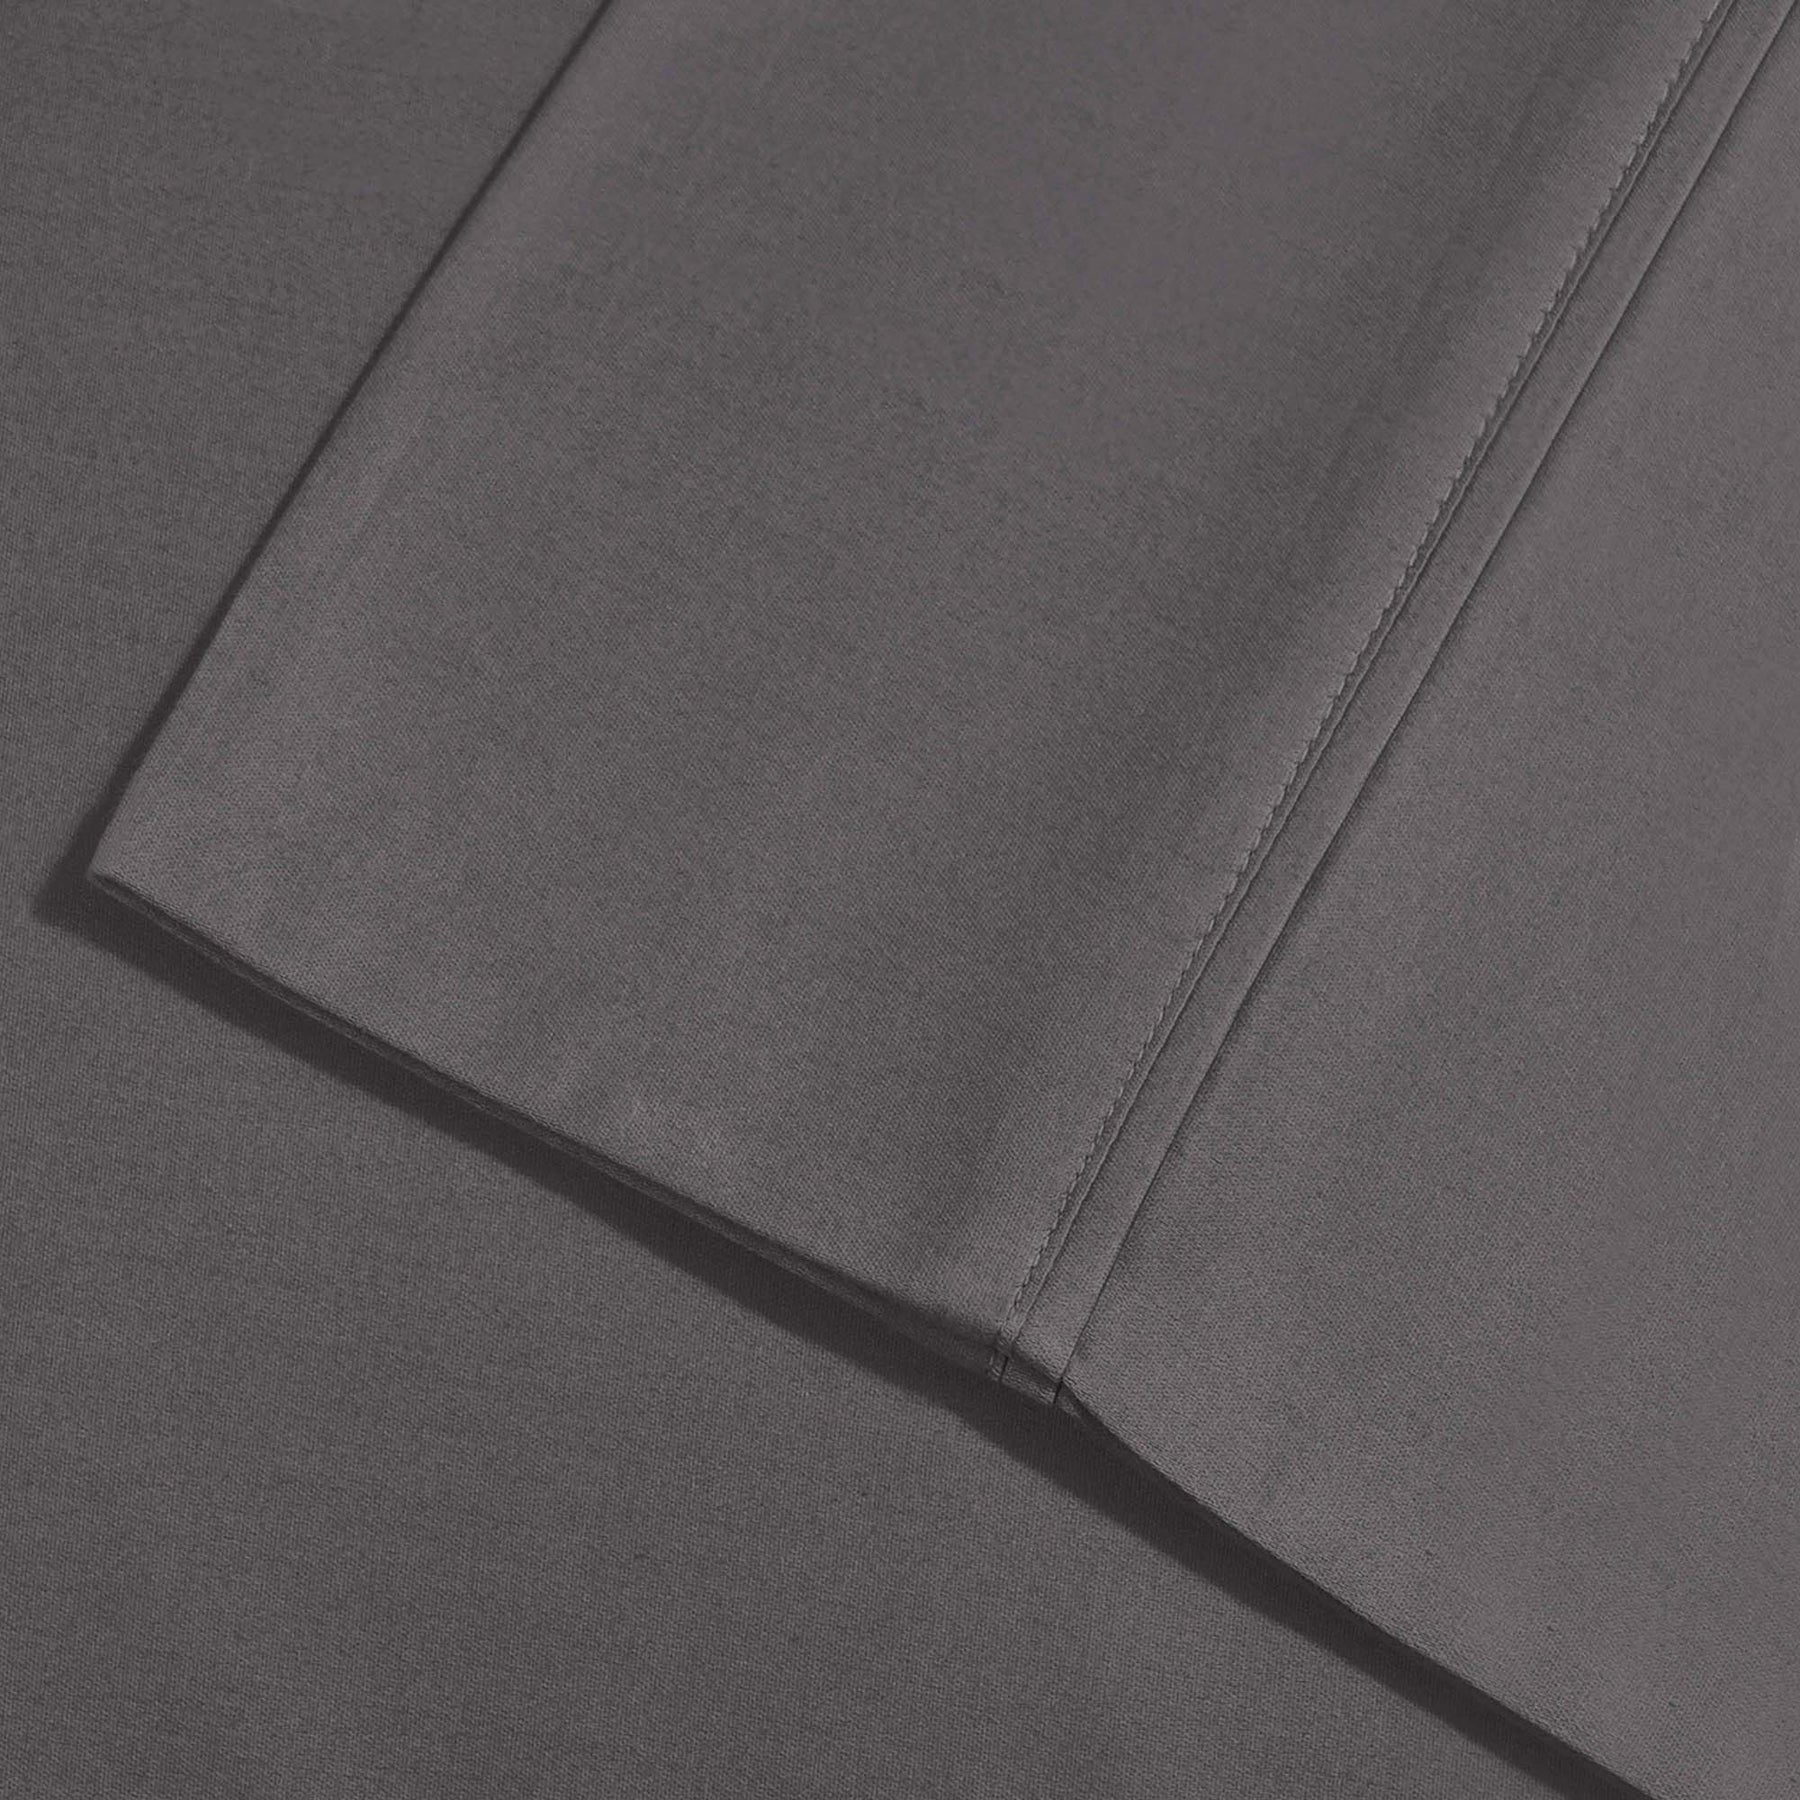 Superior Solid Deep Pocket Cotton Blend Bed Sheet Set - Grey